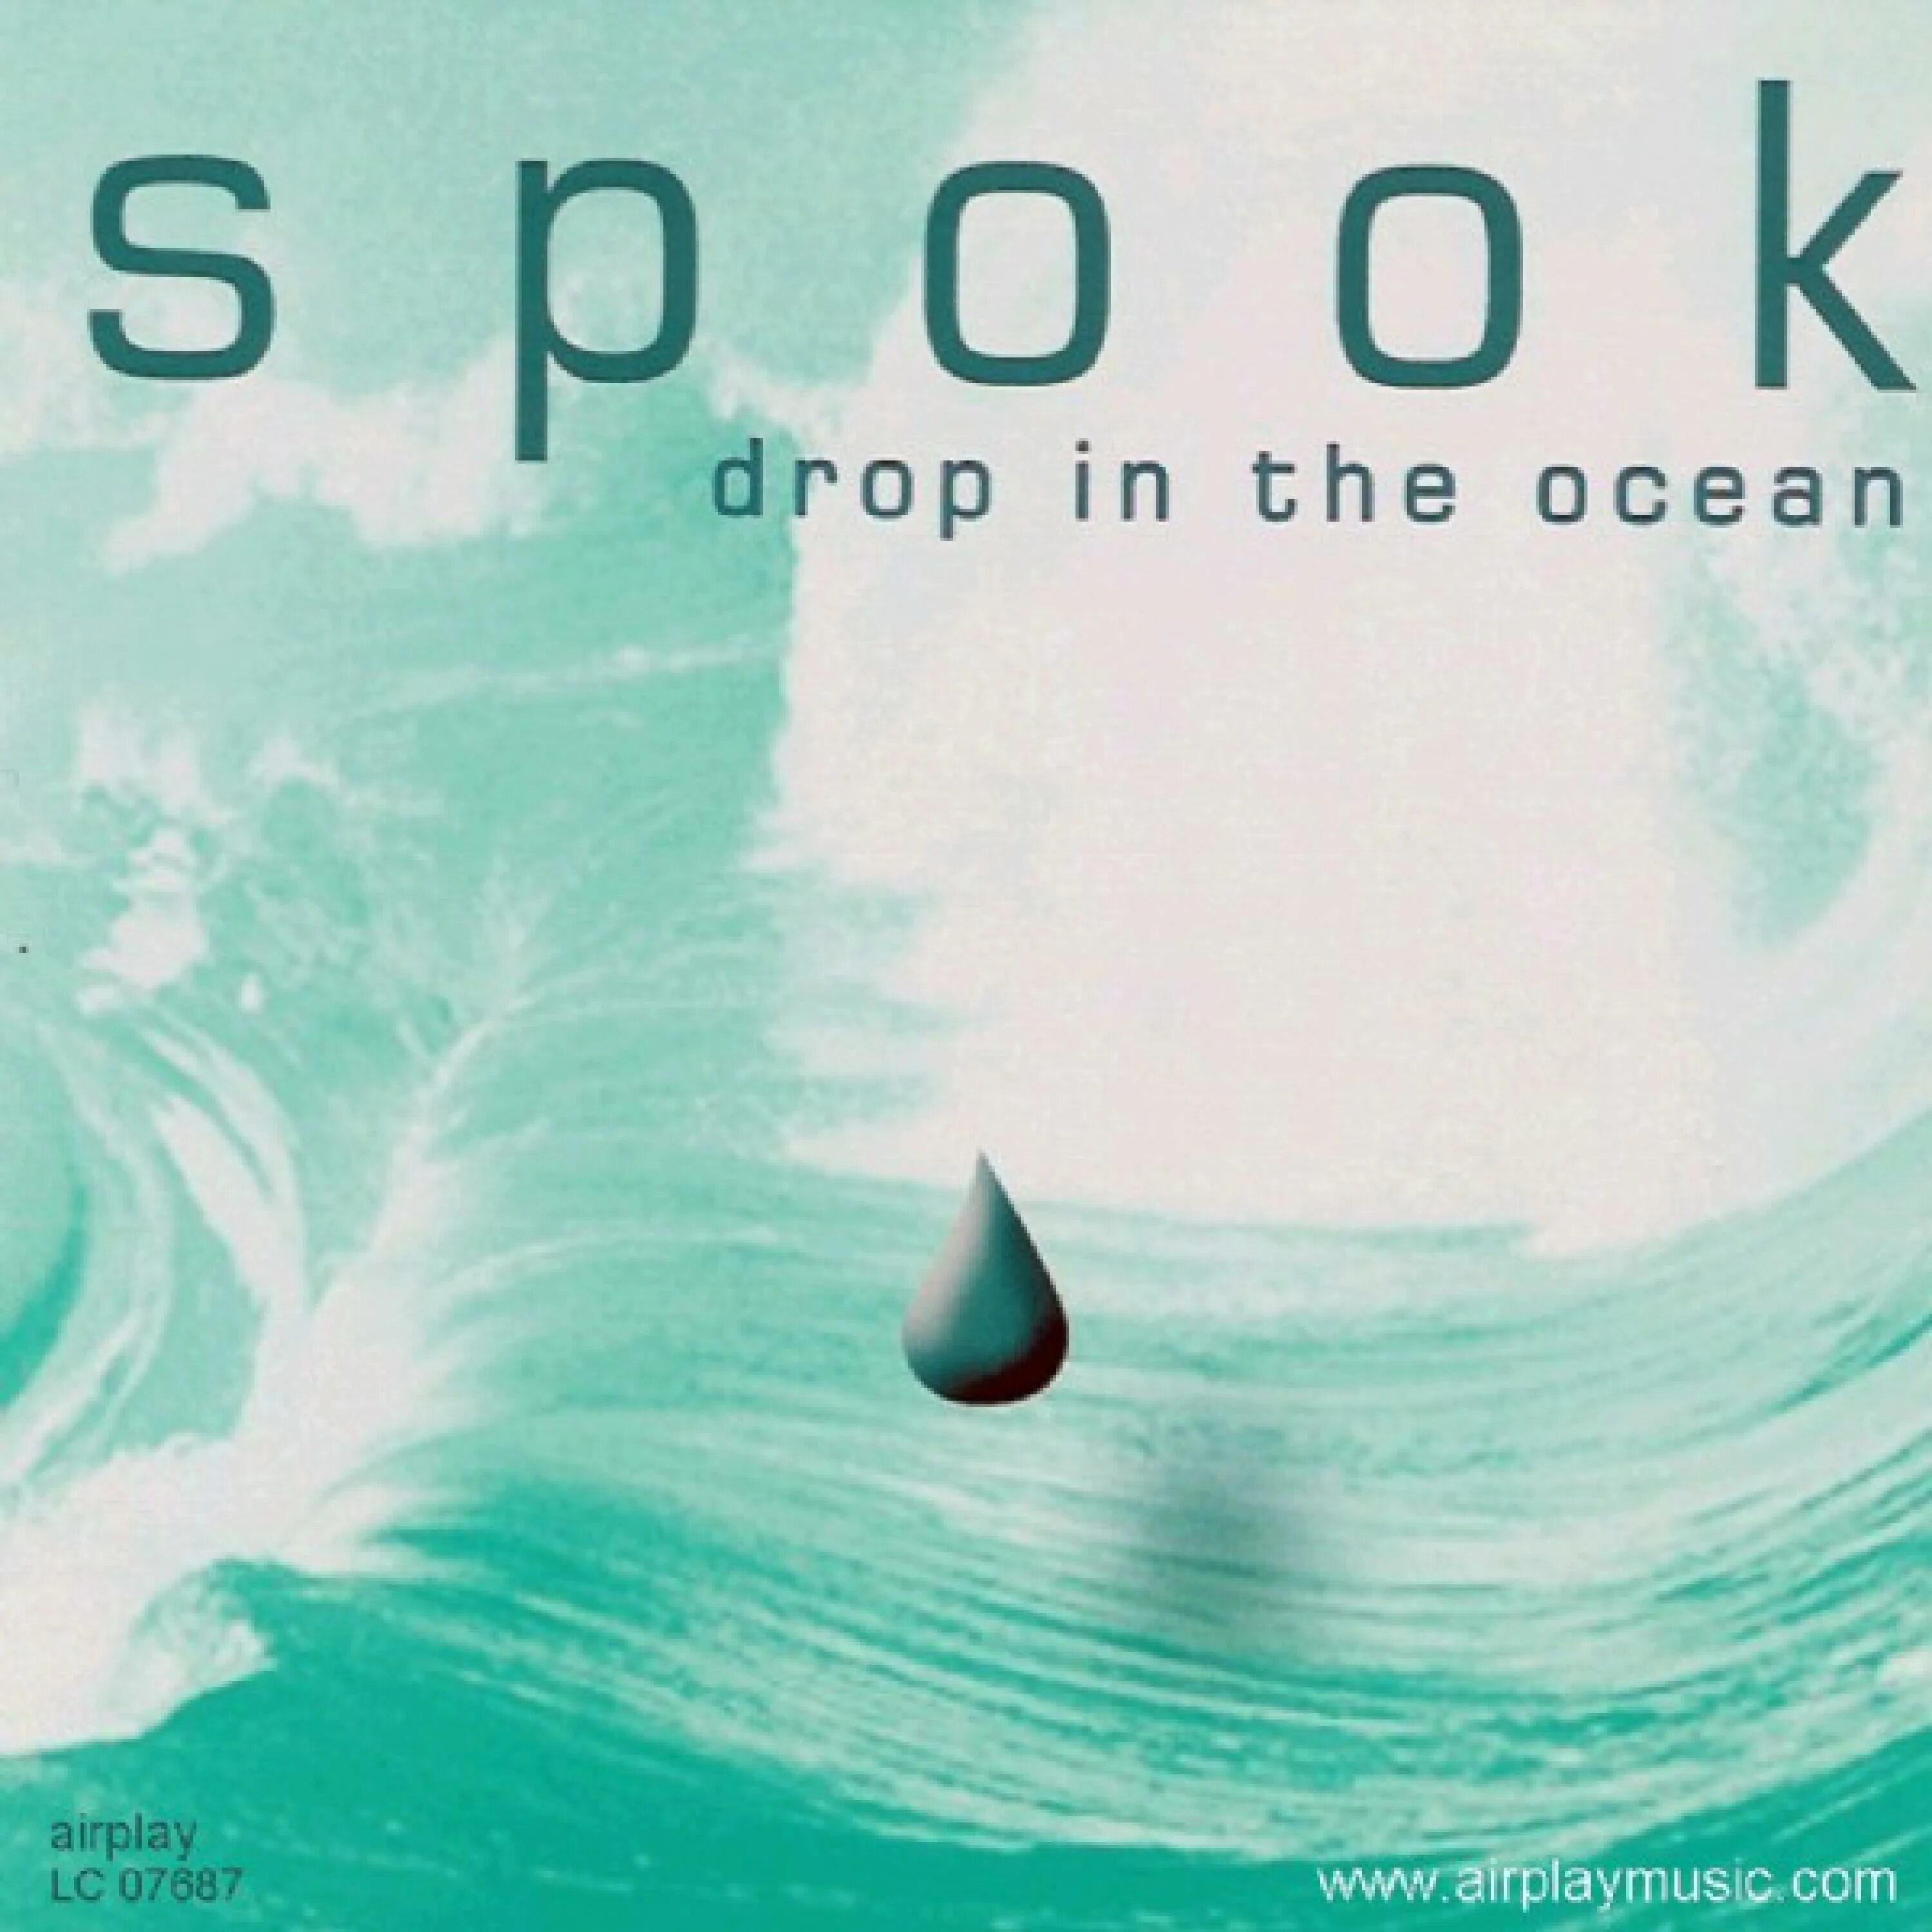 Drop альбомы. Drop in. I Drop in the Ocean. Give up Drops become the Ocean.